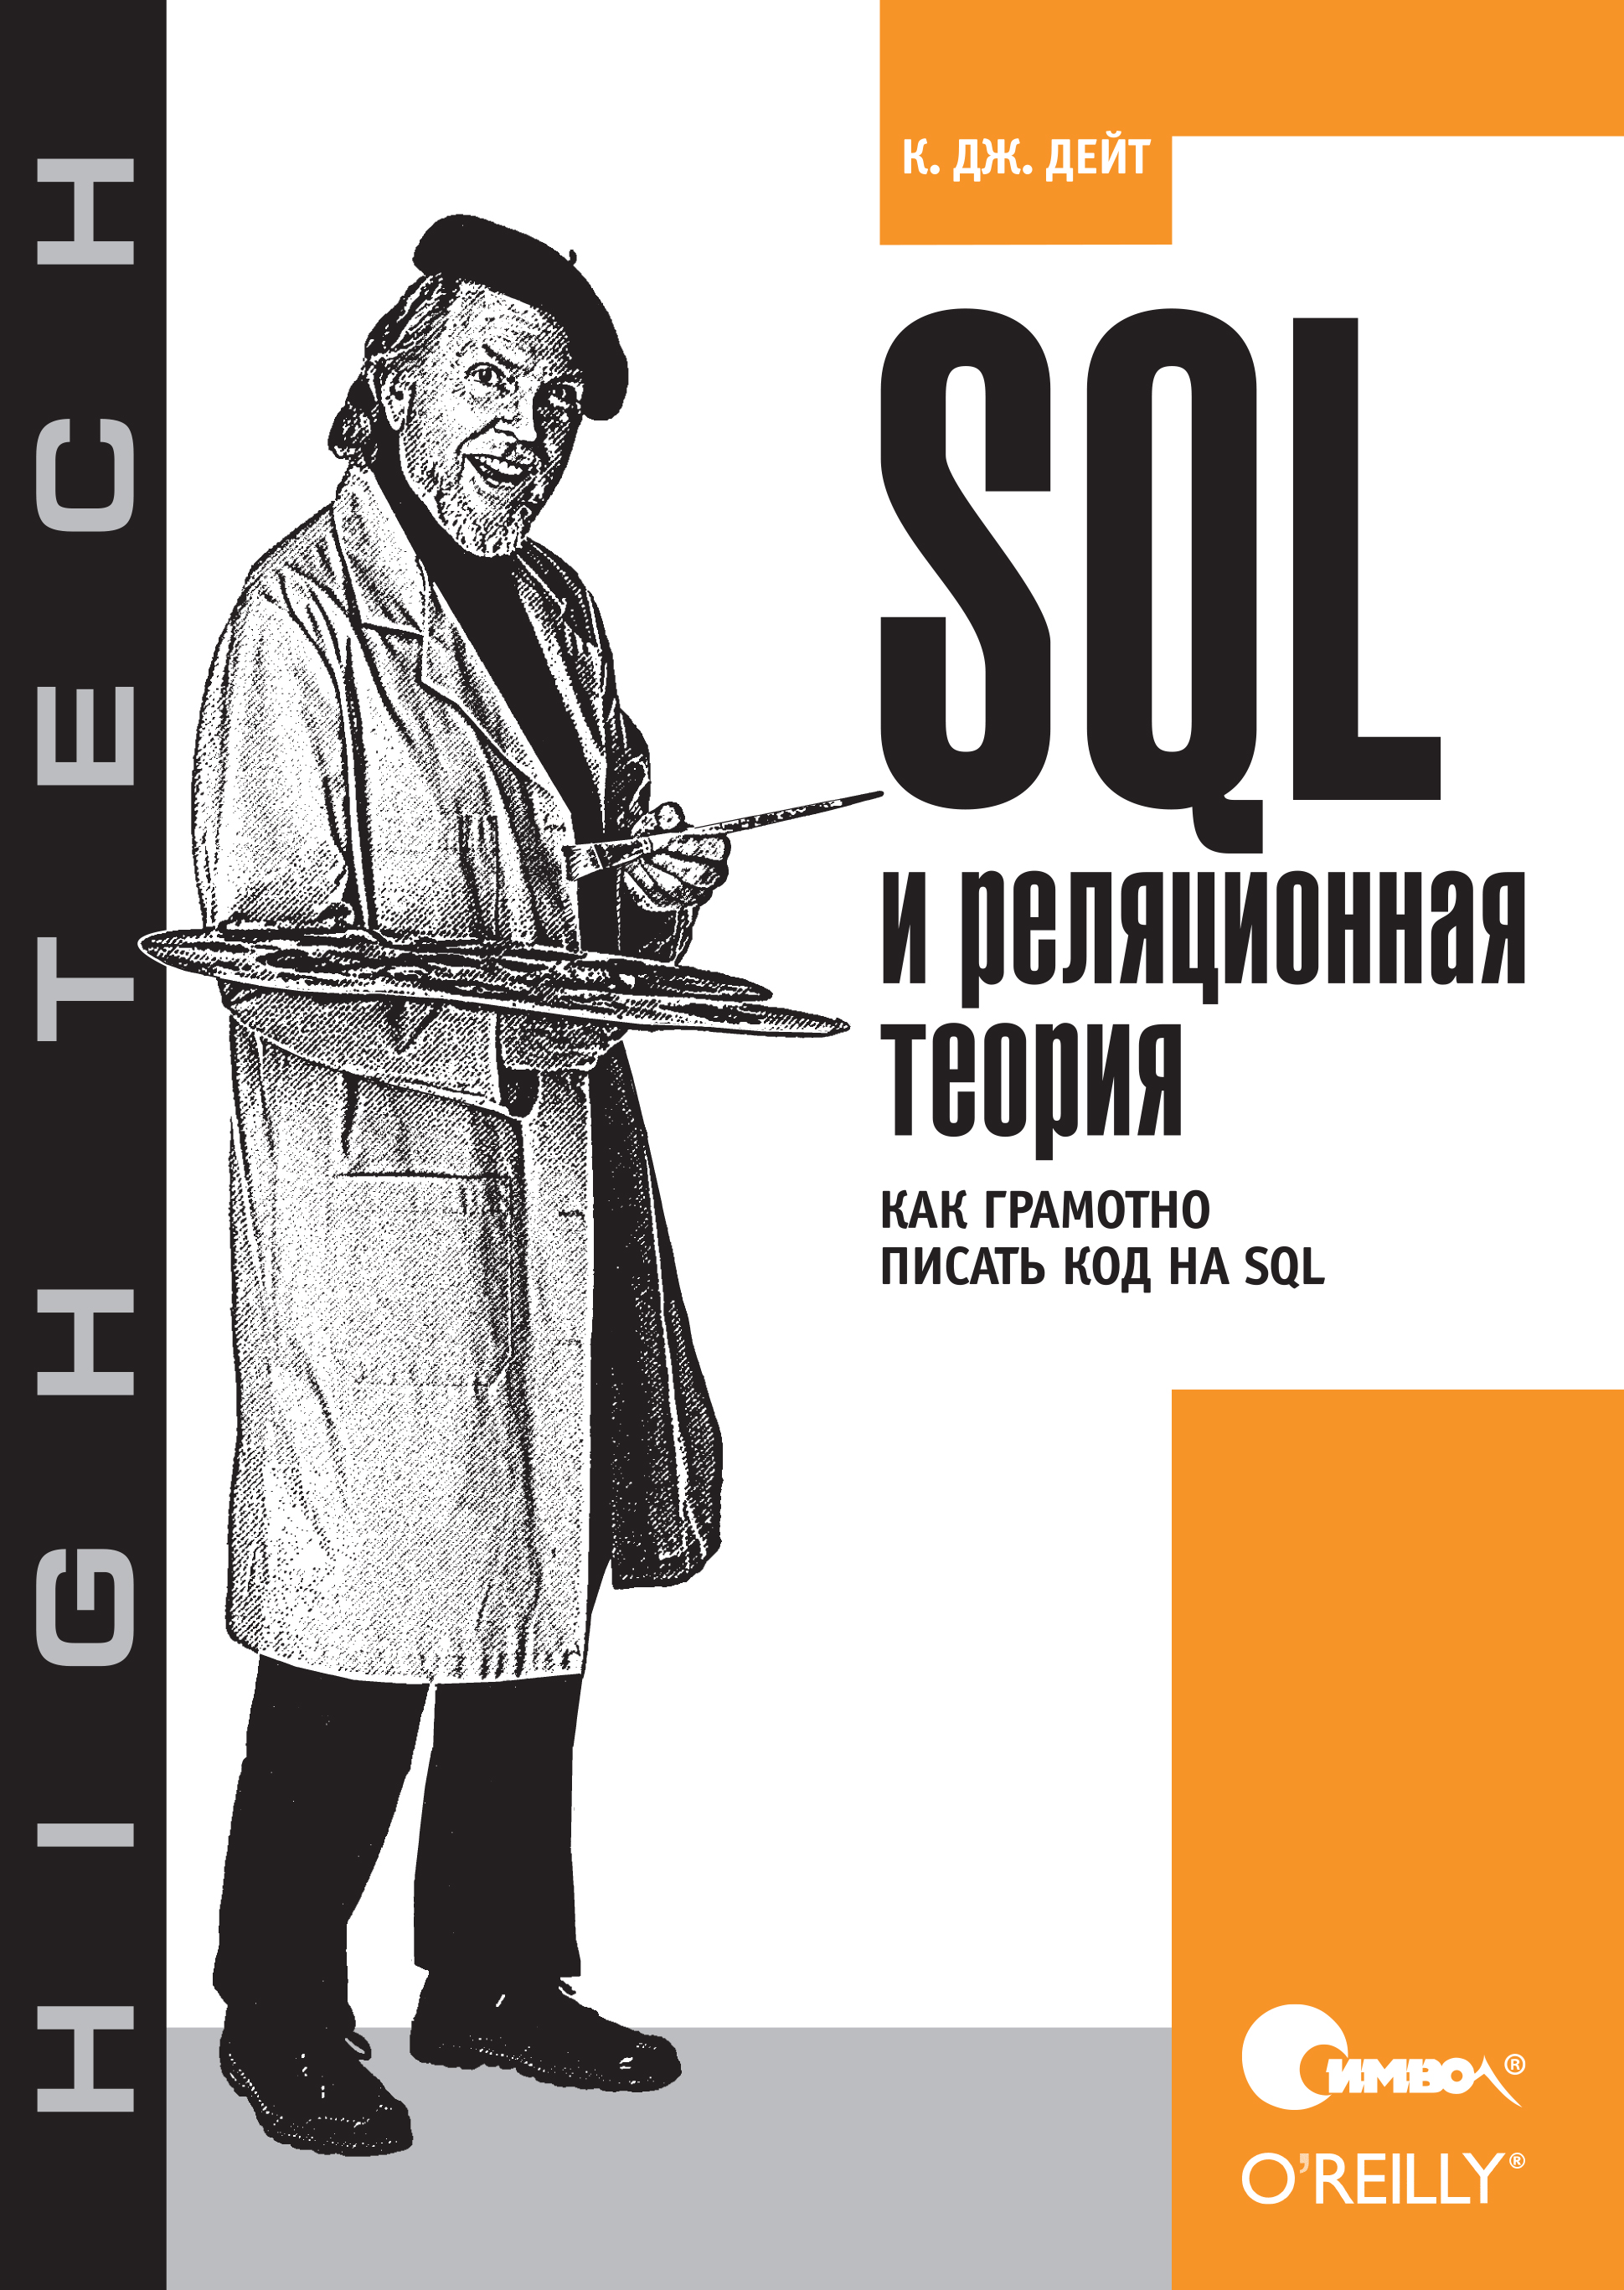 Книга  SQL и реляционная теория. Как грамотно писать код на SQL созданная К. Дж. Дейт, А. А. Слинкин может относится к жанру зарубежная компьютерная литература, книги о компьютерах, компьютерная справочная литература, программирование, программы. Стоимость электронной книги SQL и реляционная теория. Как грамотно писать код на SQL с идентификатором 24499654 составляет 390.00 руб.